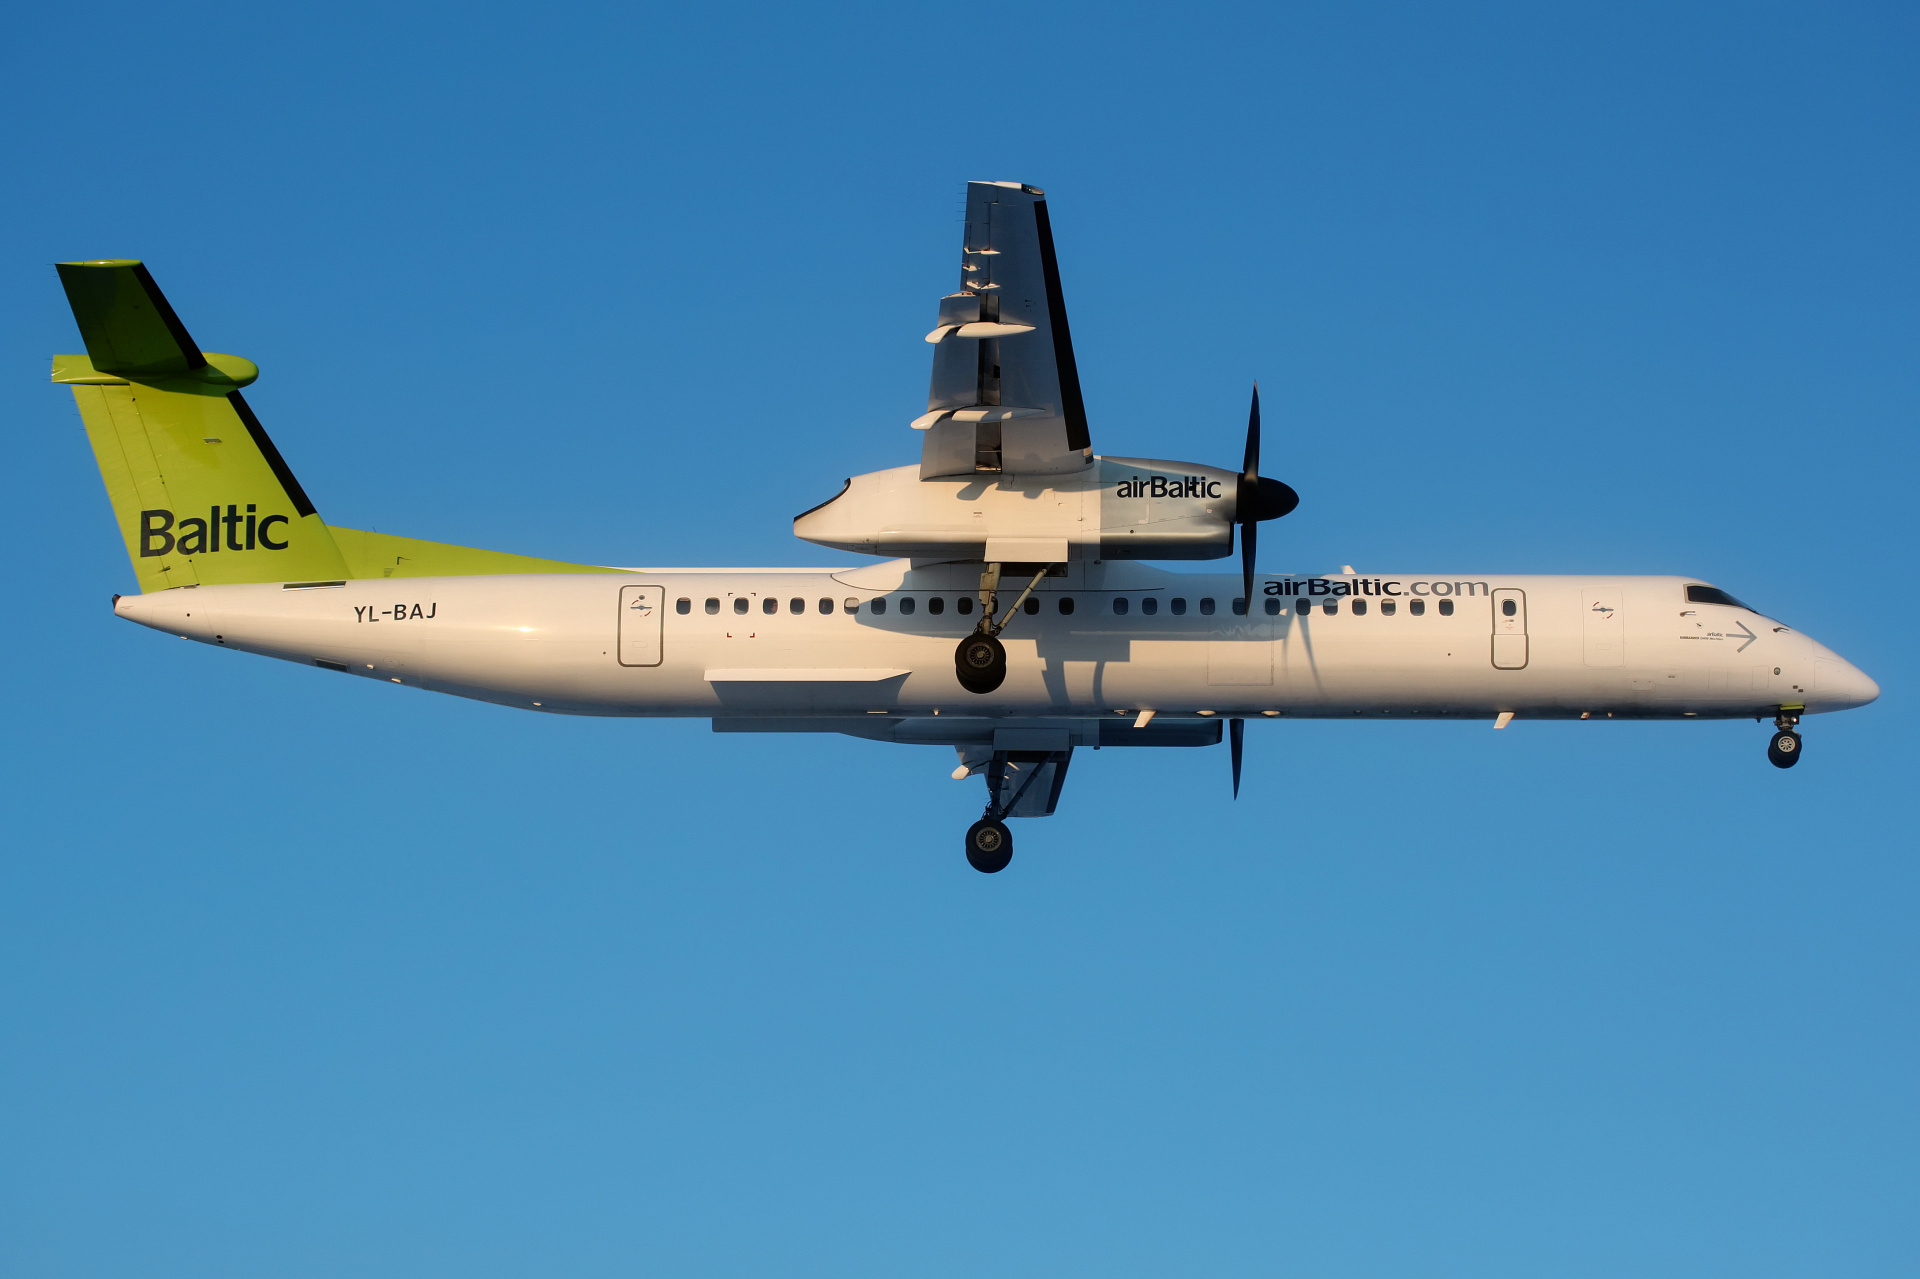 YL-BAJ (Aircraft » EPWA Spotting » De Havilland Canada DHC-8 Dash 8 » airBaltic)